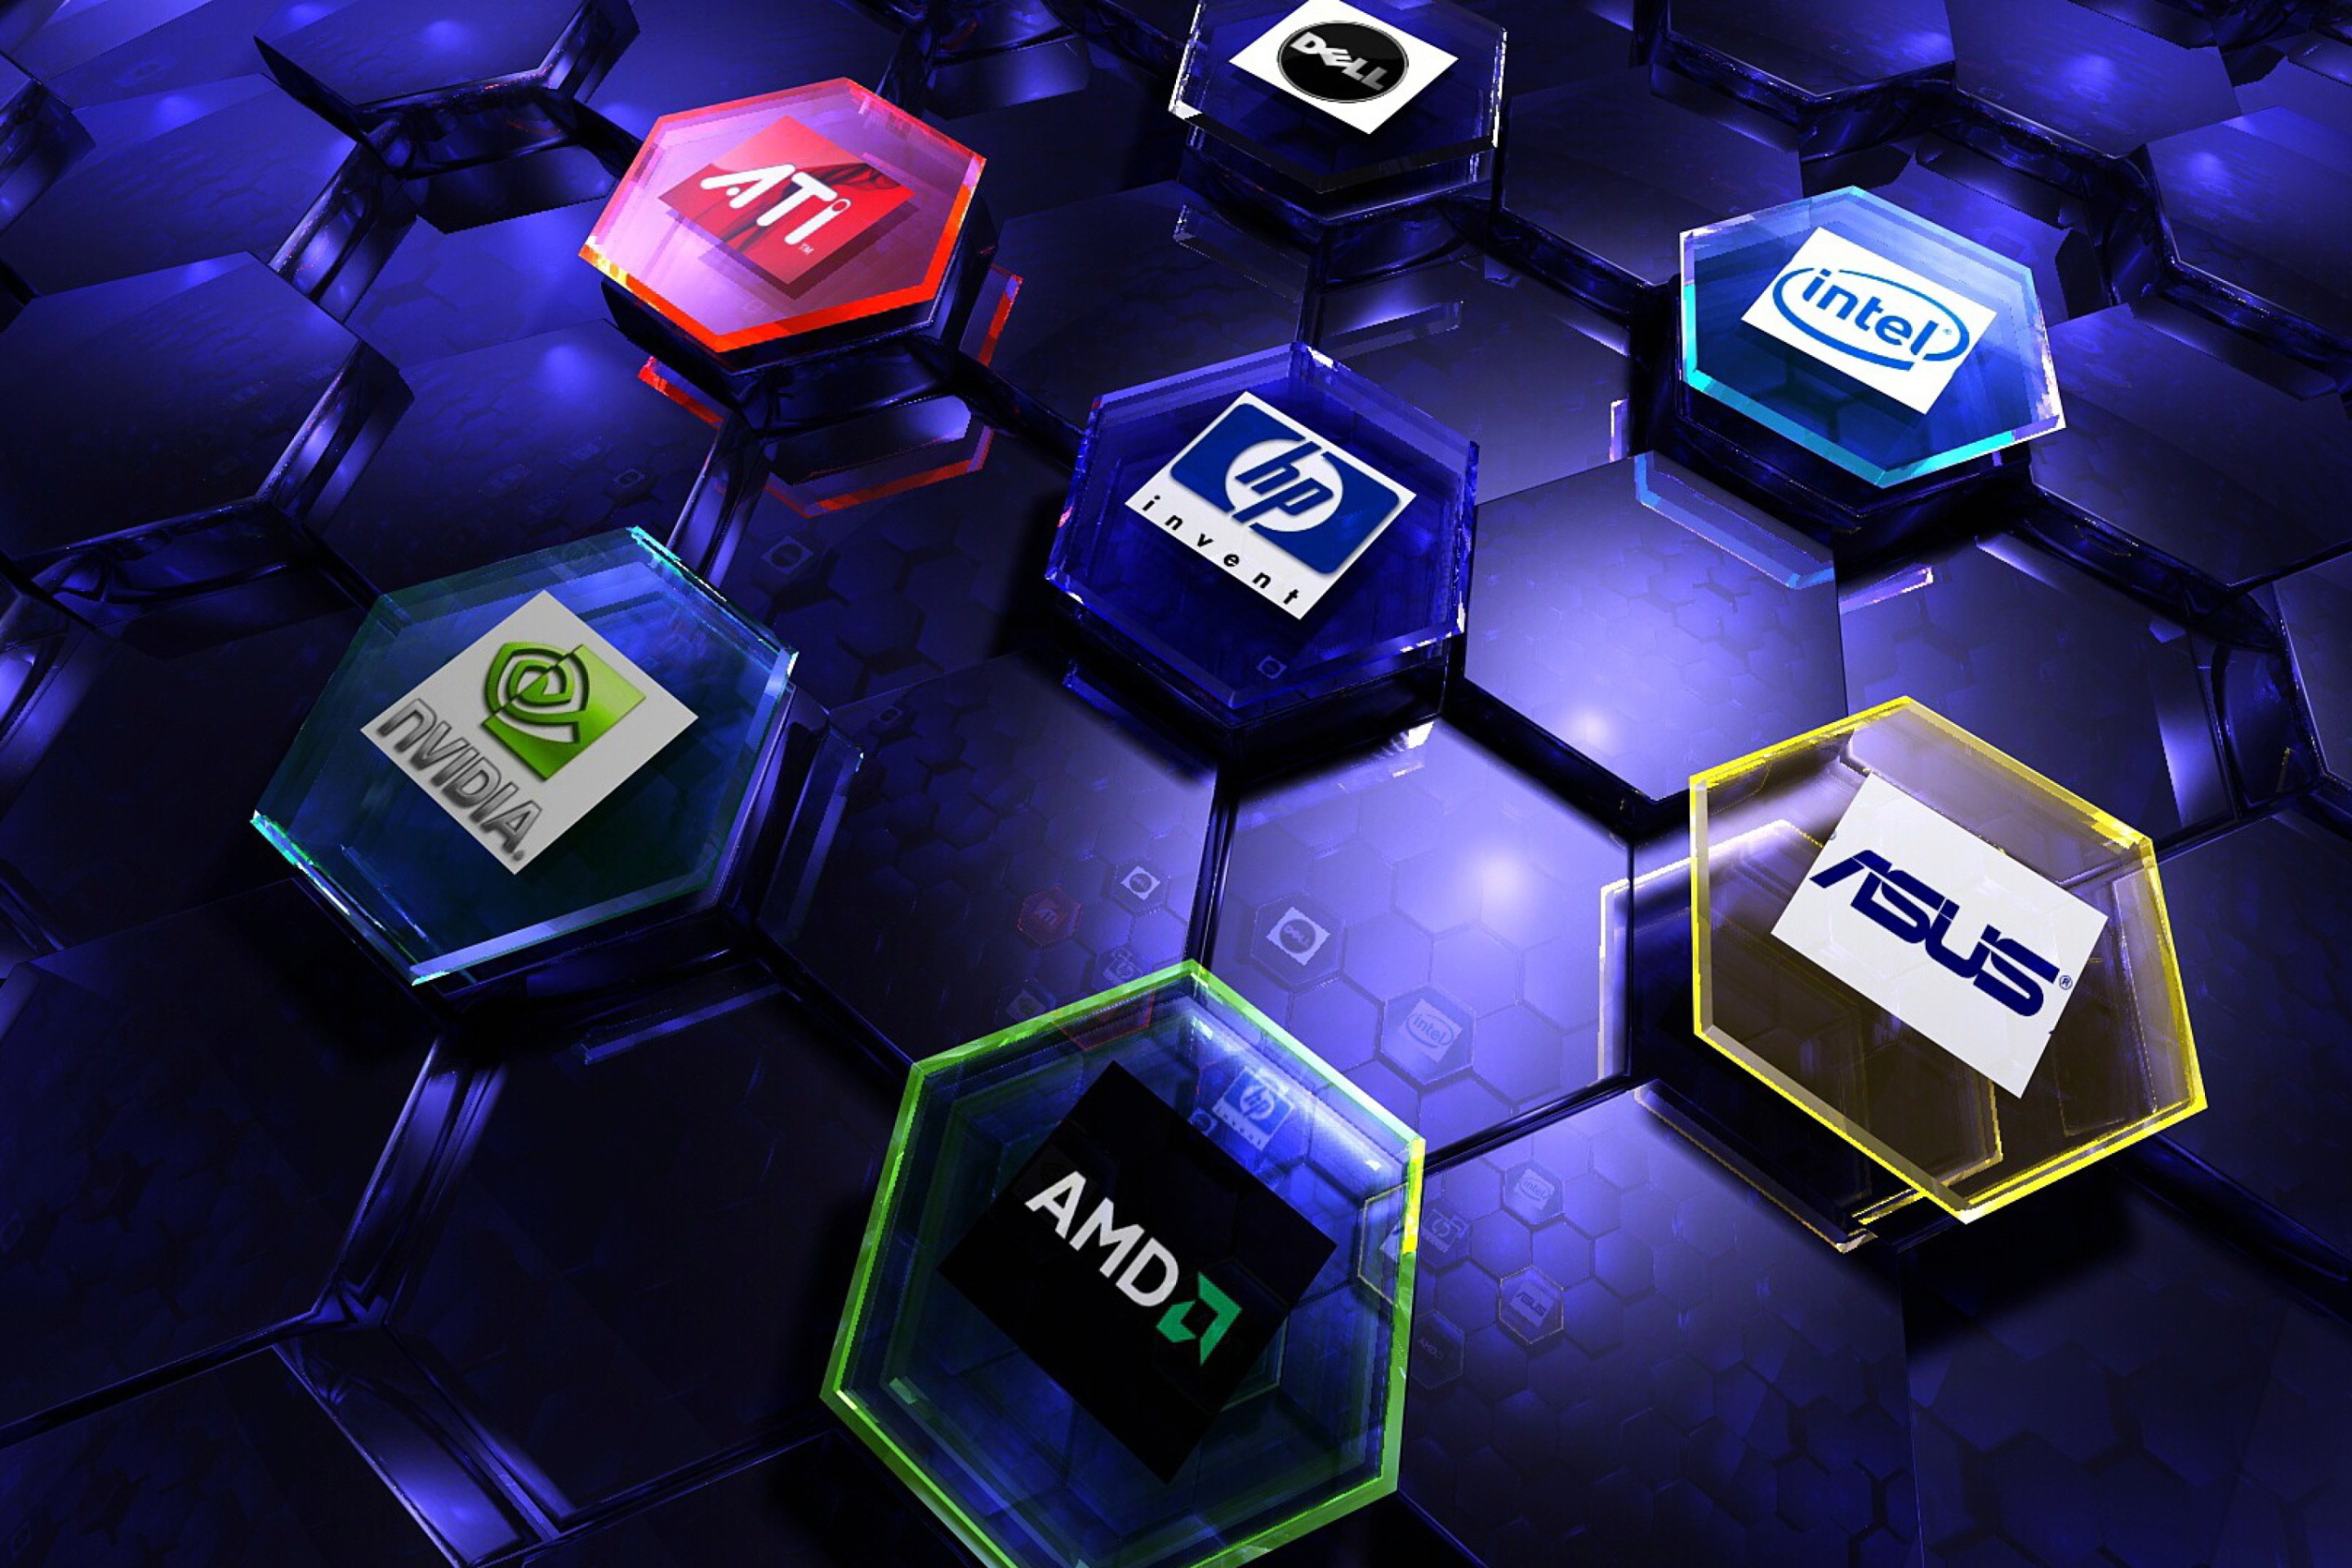 Das Hi-Tech Logos: AMD, HP, Ati, Nvidia, Asus Wallpaper 2880x1920